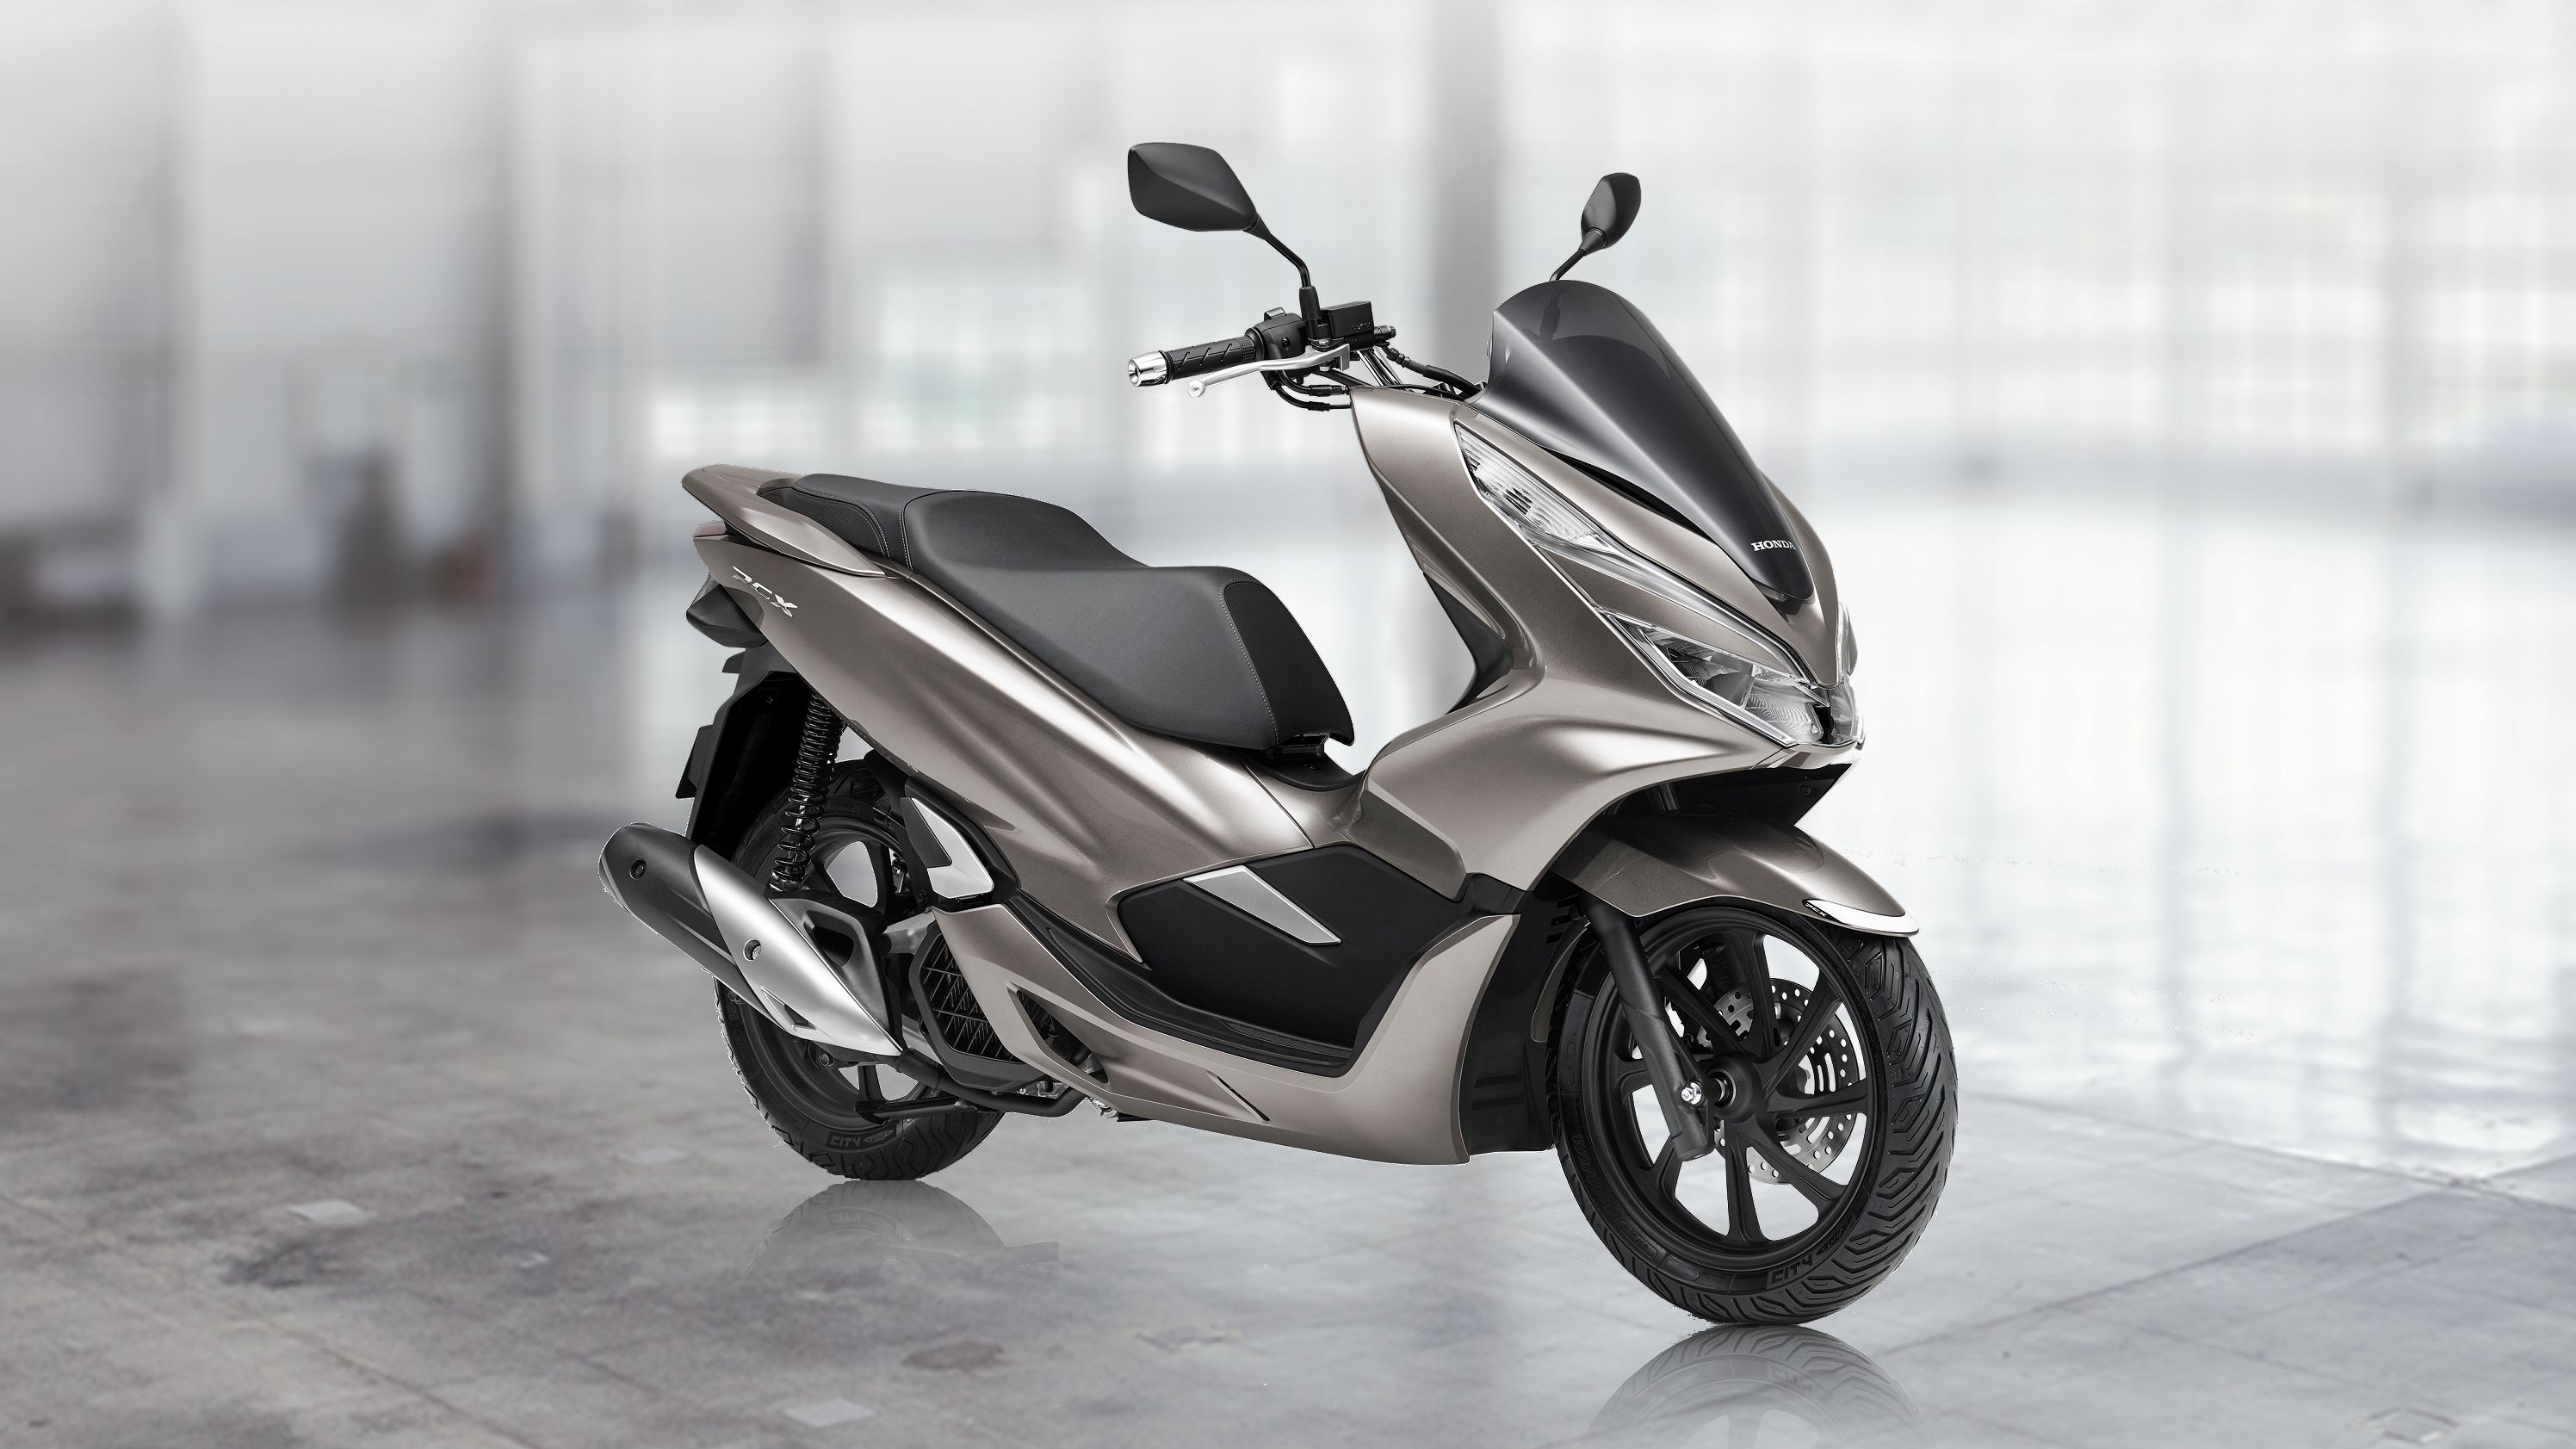 2019 - 2020 Honda PCX150